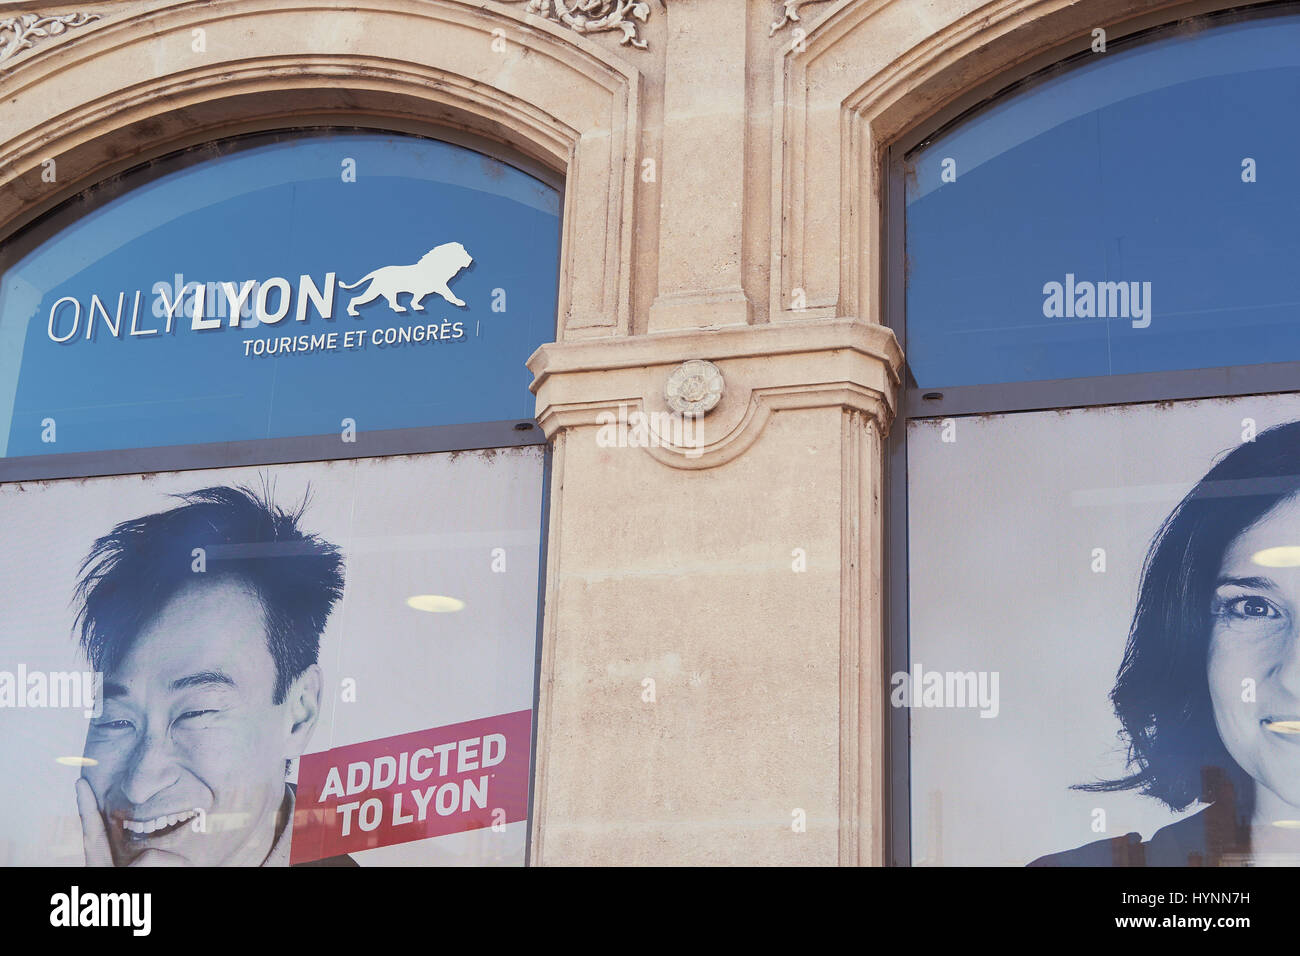 Heureux les individus de ou avec une forte connexion à Lyon en campagne de publicité pour promouvoir la ville, Auvergne-Rhone-Alpes, France, Europe Banque D'Images